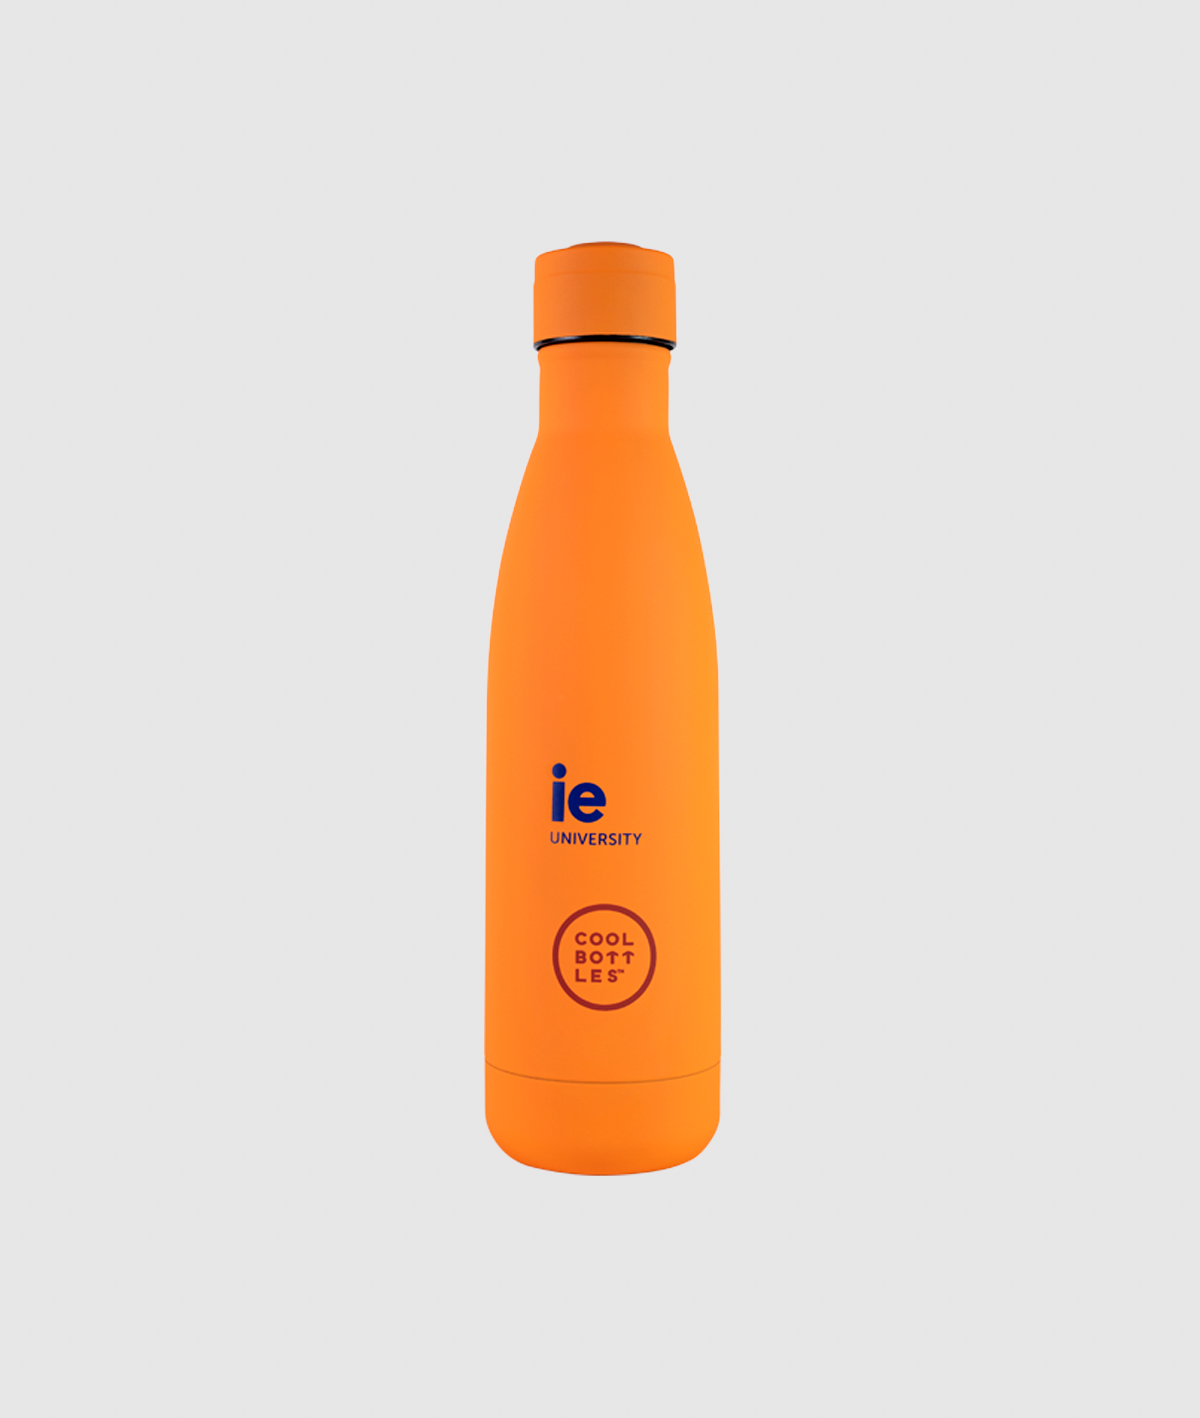 IEU Diversity Limited edition Cool Bottle. orange colour back